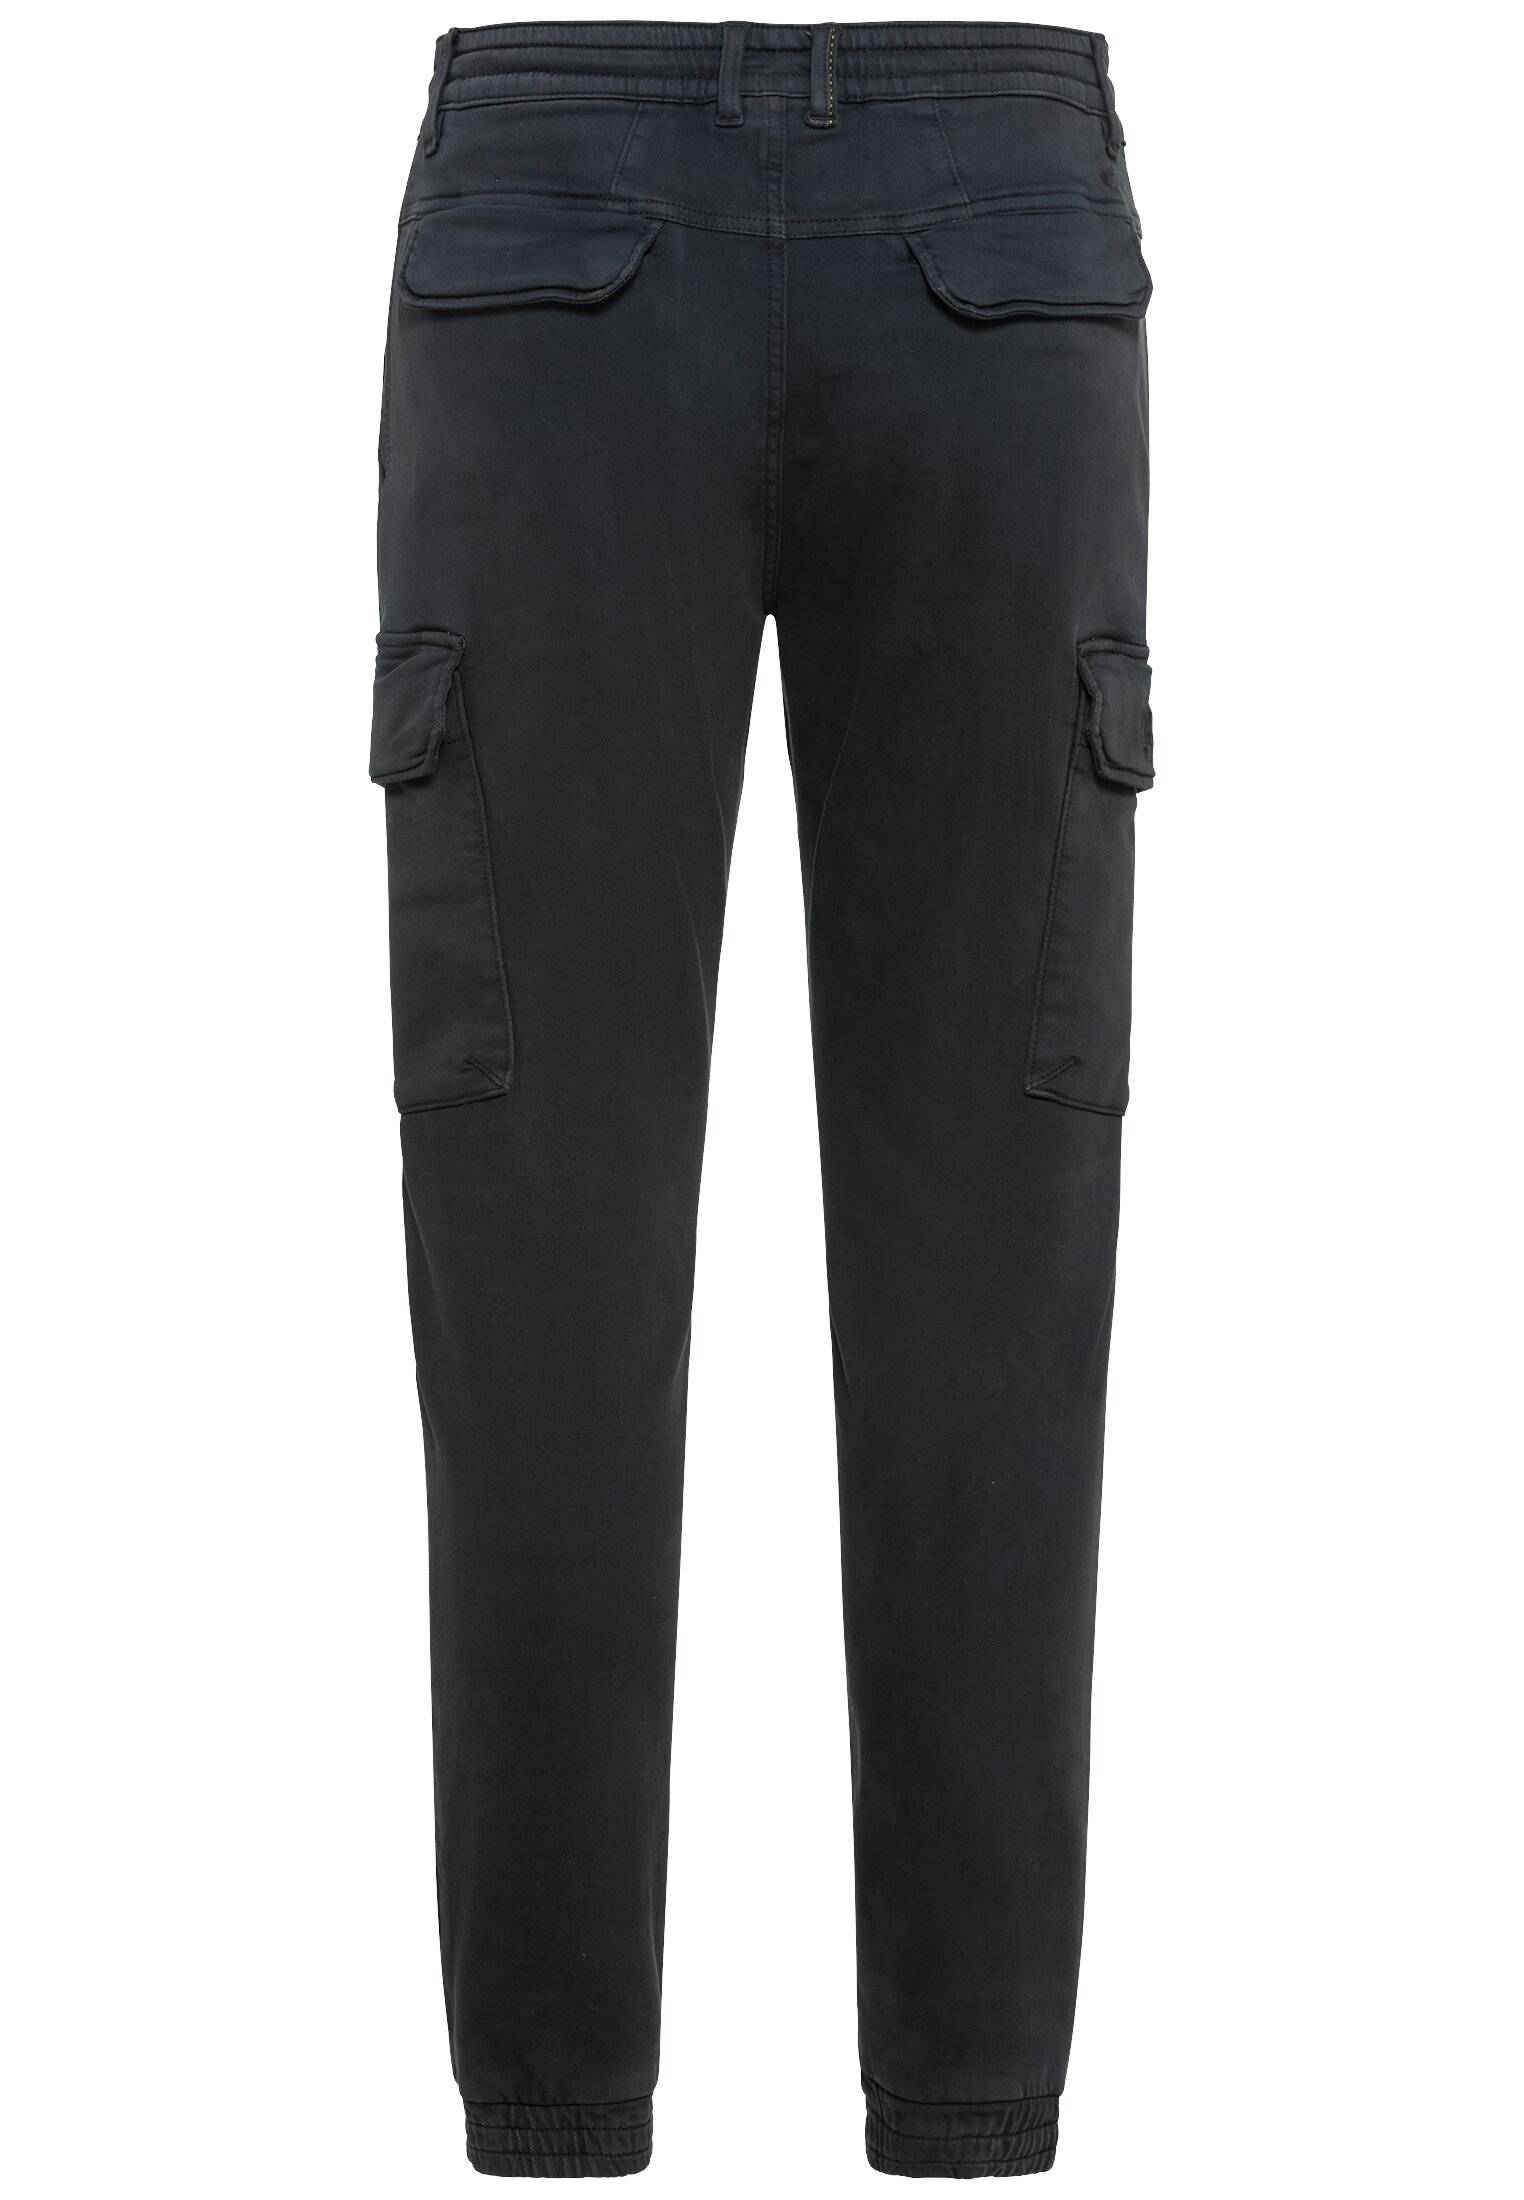 Мужские брюки Camel Active, серые, цвет серый, размер 33 - фото 2